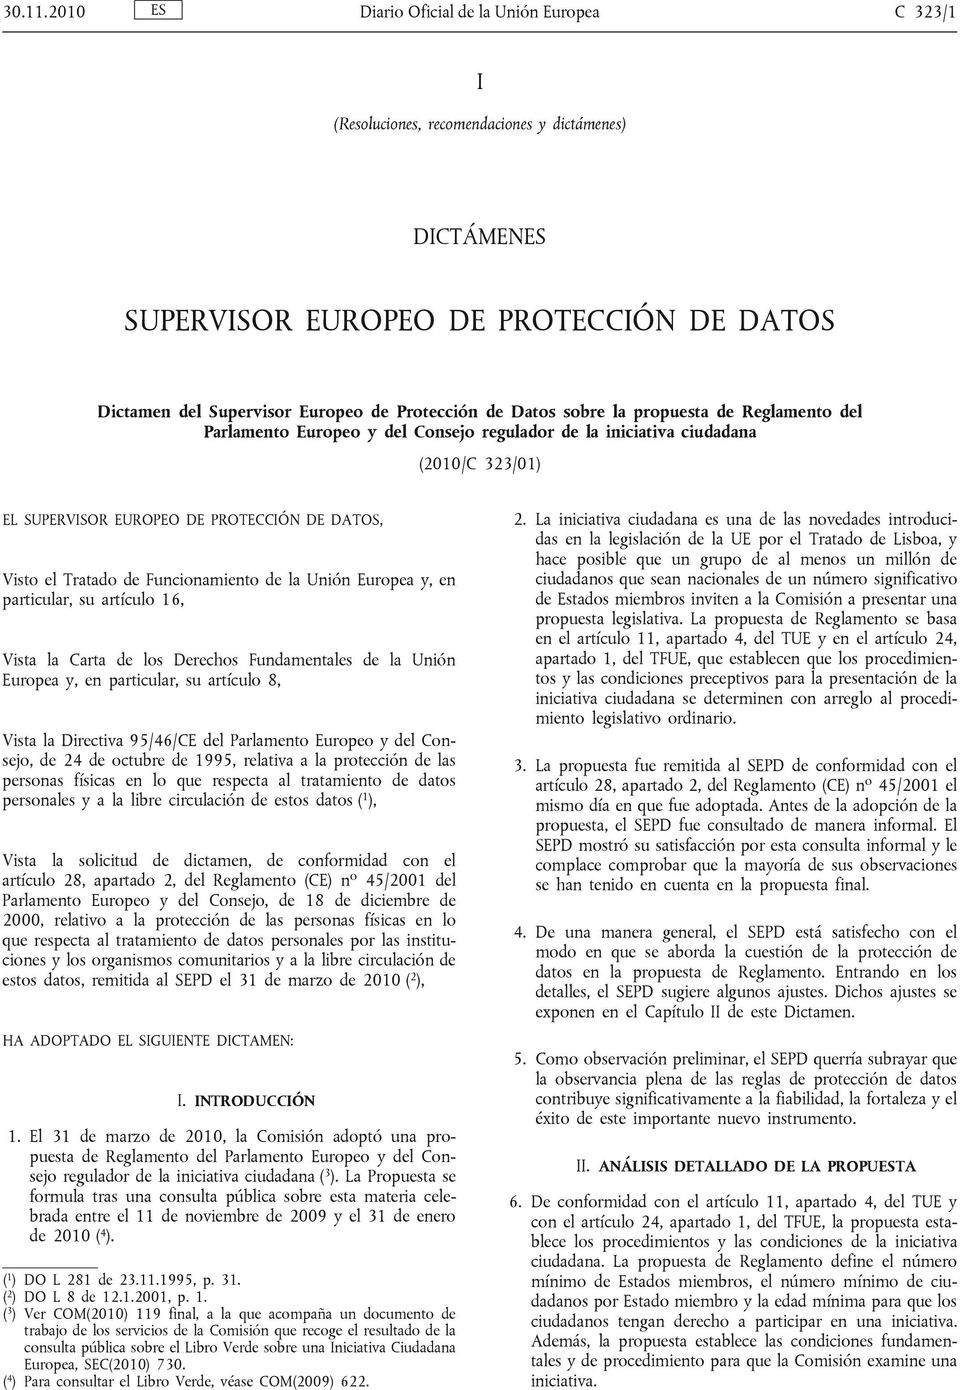 Datos sobre la propuesta de Reglamento del Parlamento Europeo y del Consejo regulador de la iniciativa ciudadana (2010/C 323/01) EL SUPERVISOR EUROPEO DE PROTECCIÓN DE DATOS, Visto el Tratado de